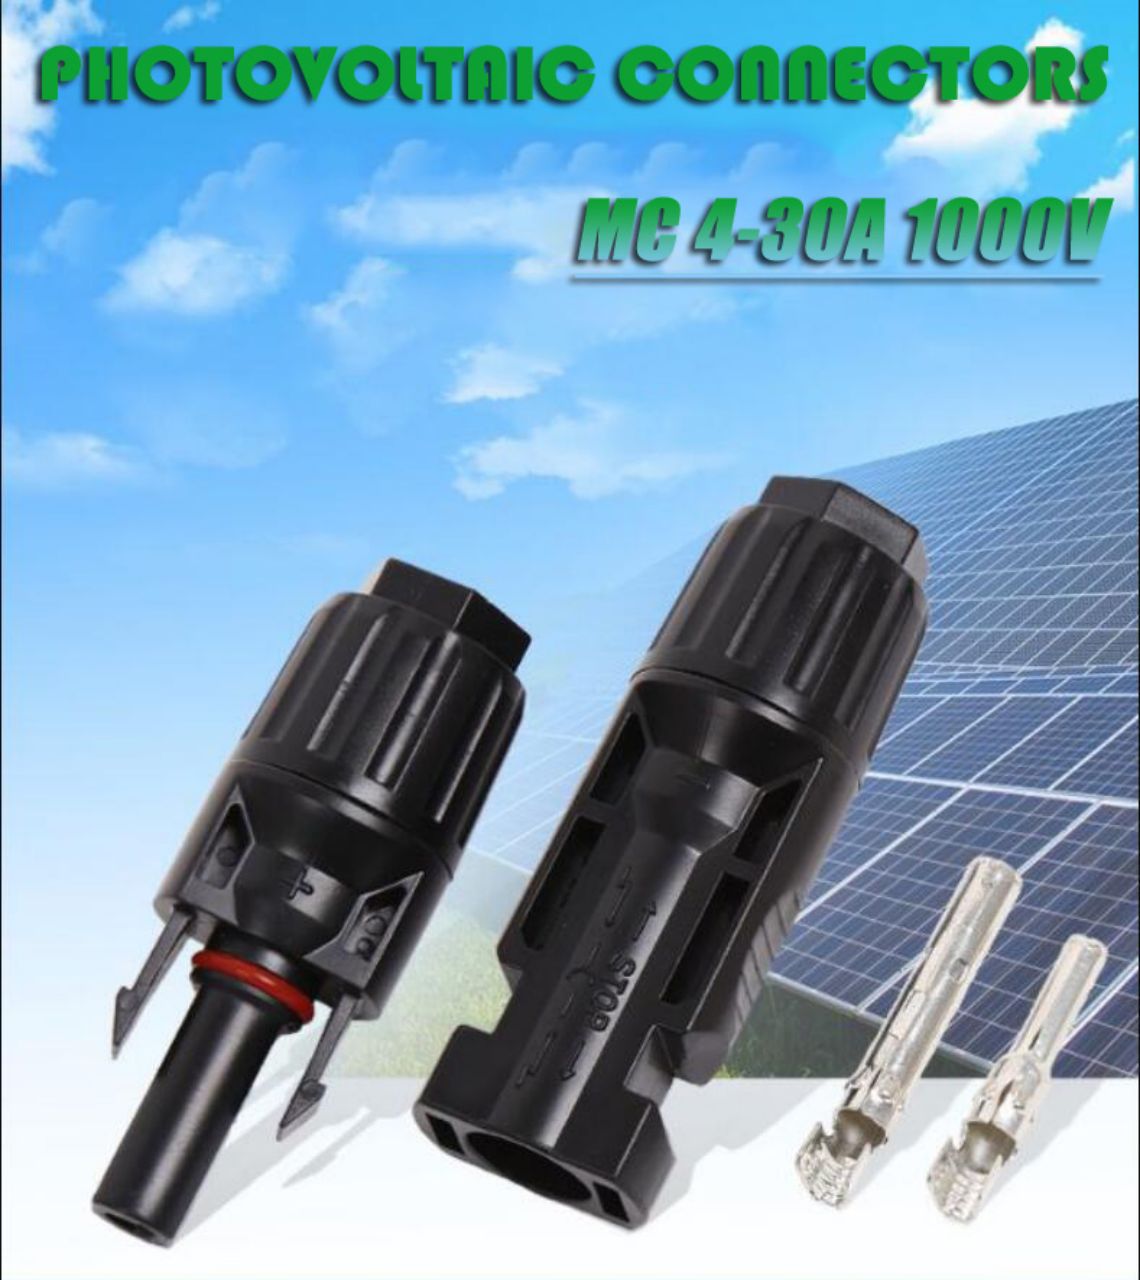 conector solar fotovoltaico